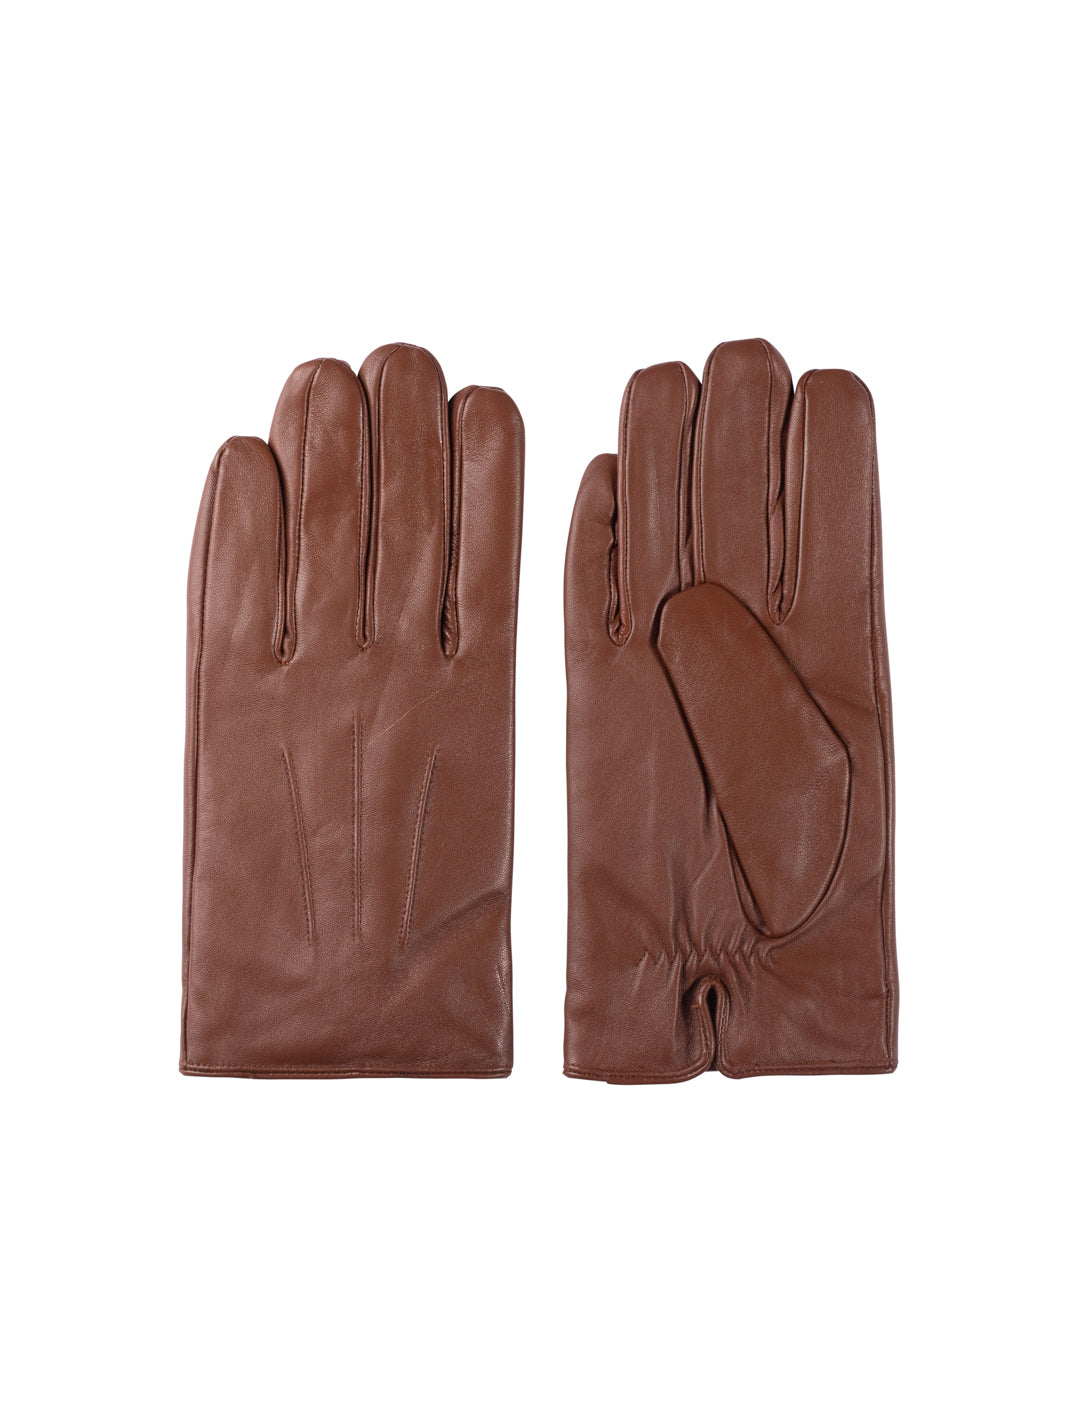 Men's Sheepskin Glove with Faux Fur in Cognac